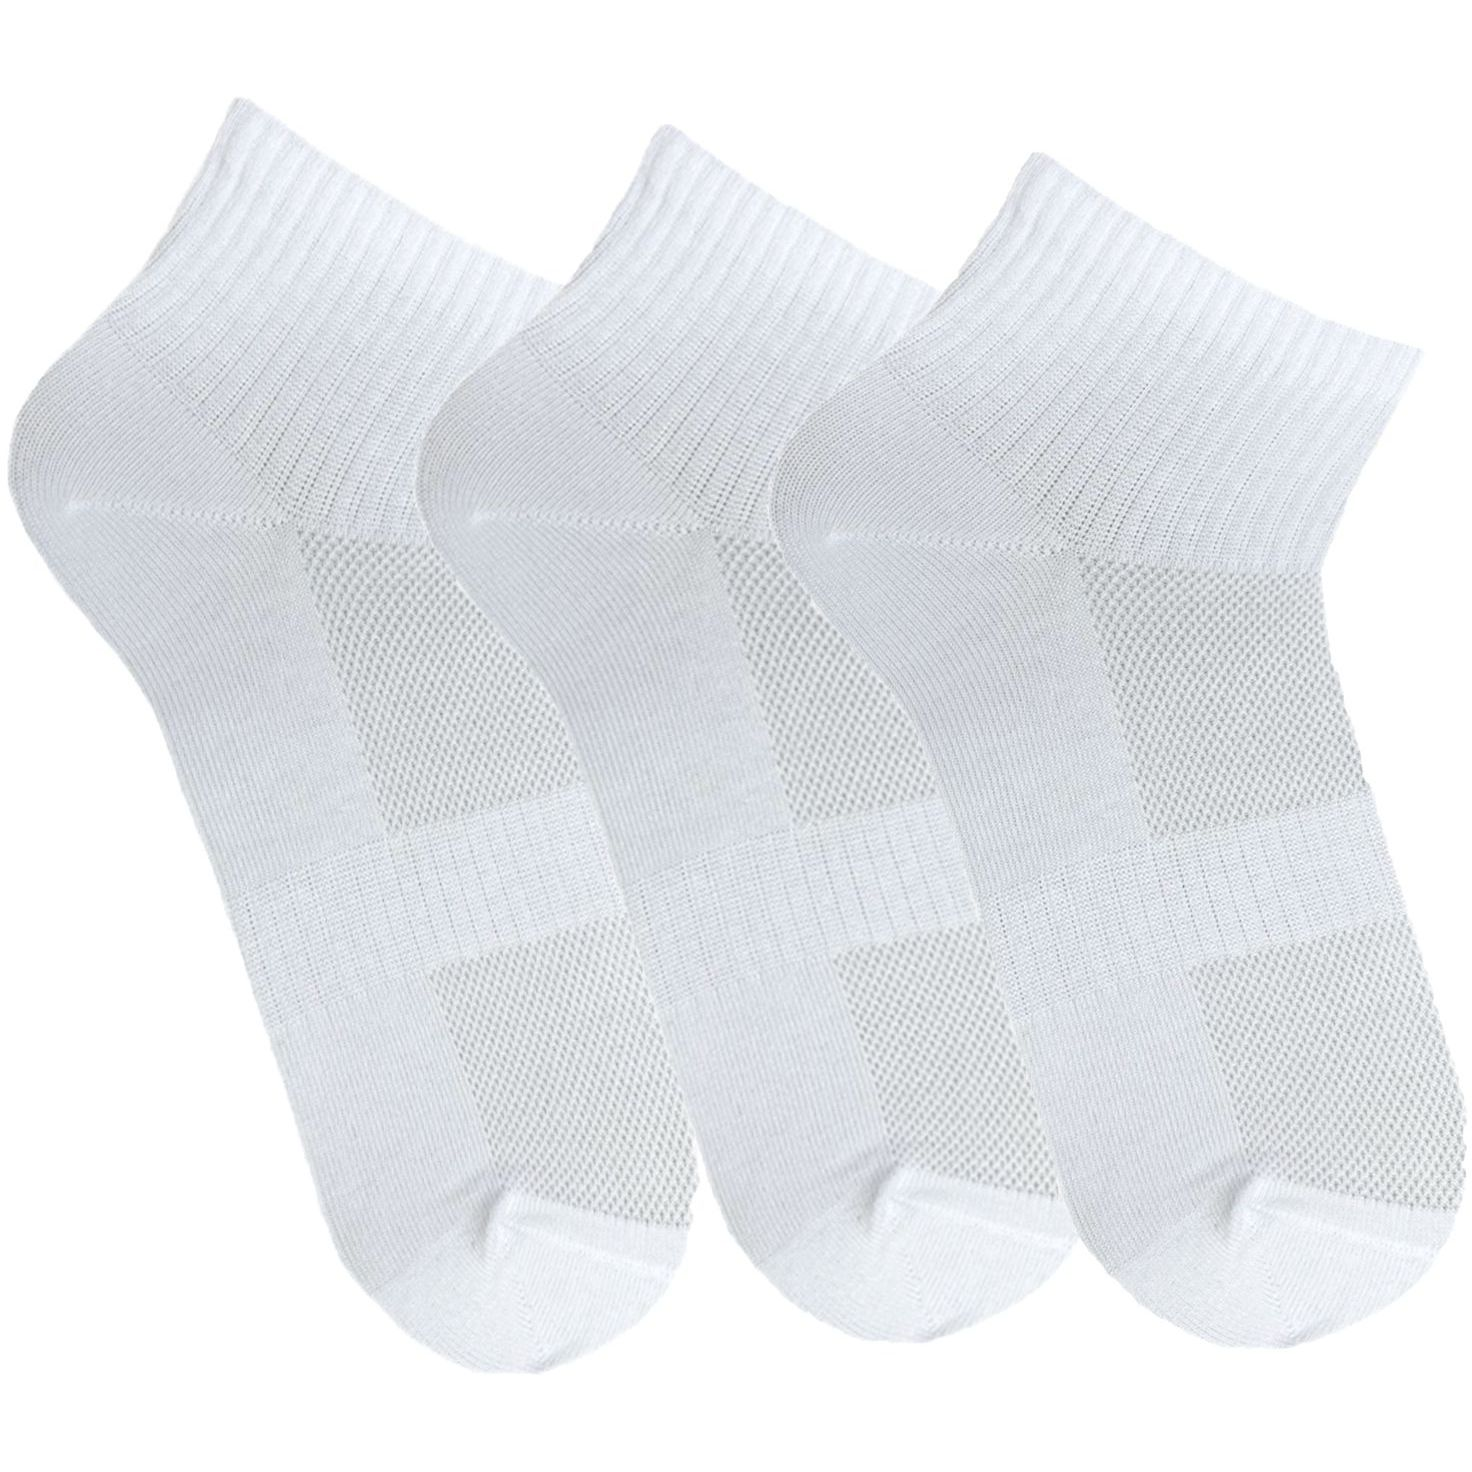 Набір жіночих шкарпеток Premier Socks 36-40 3 пари білі (4820163319223)фото